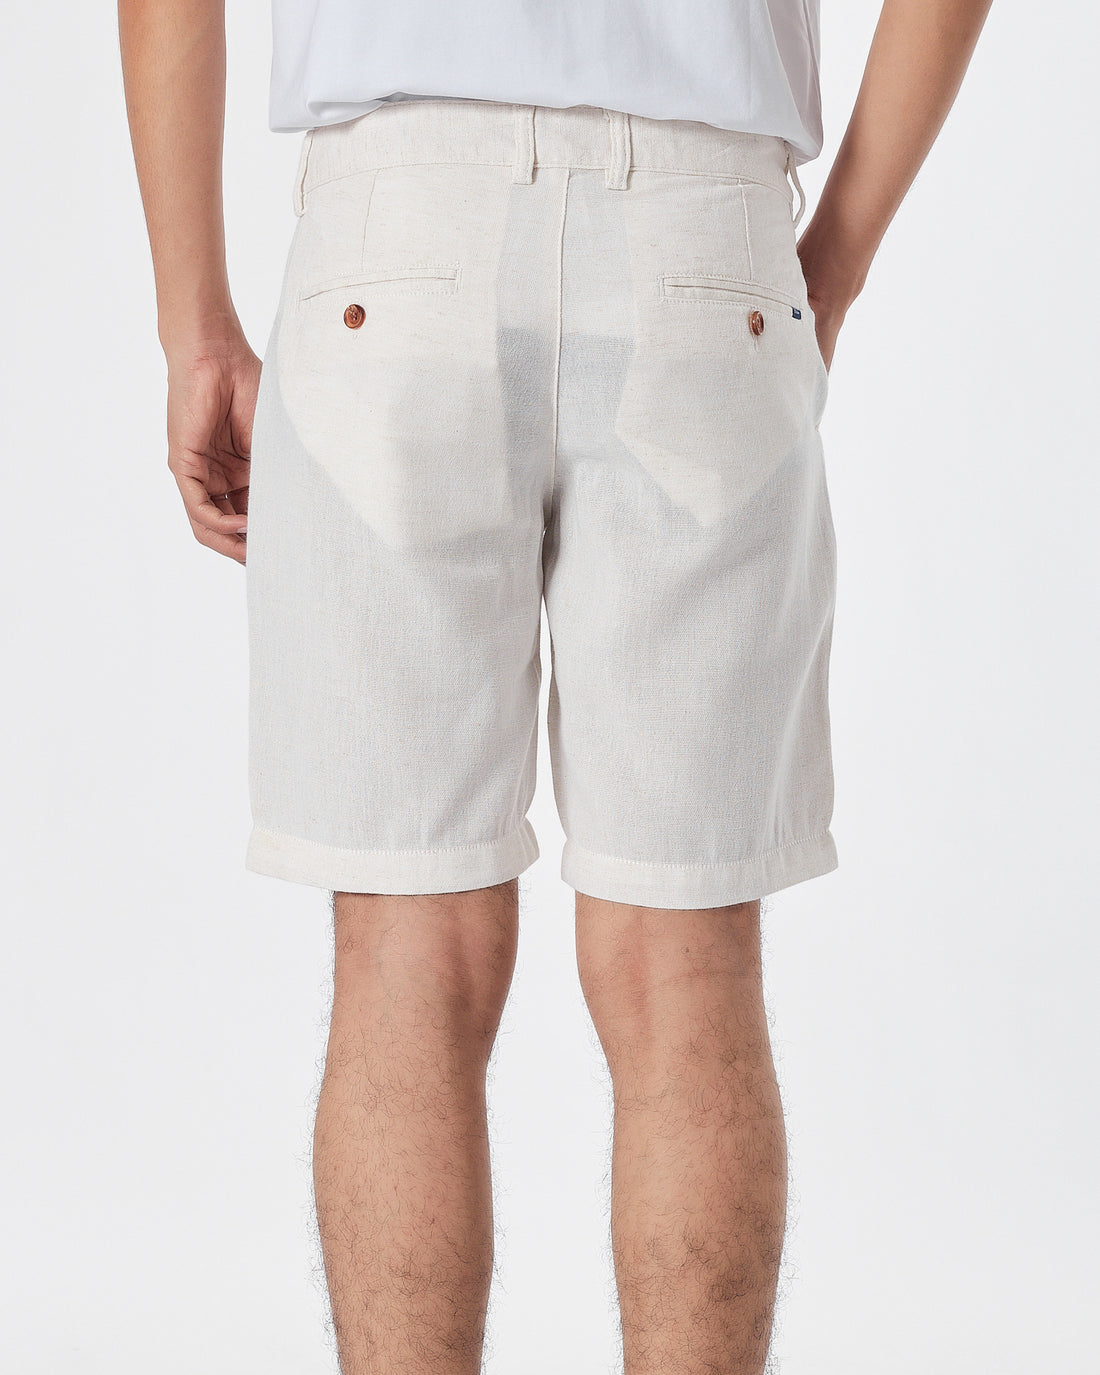 RL Linen Men White Short Pants 17.90